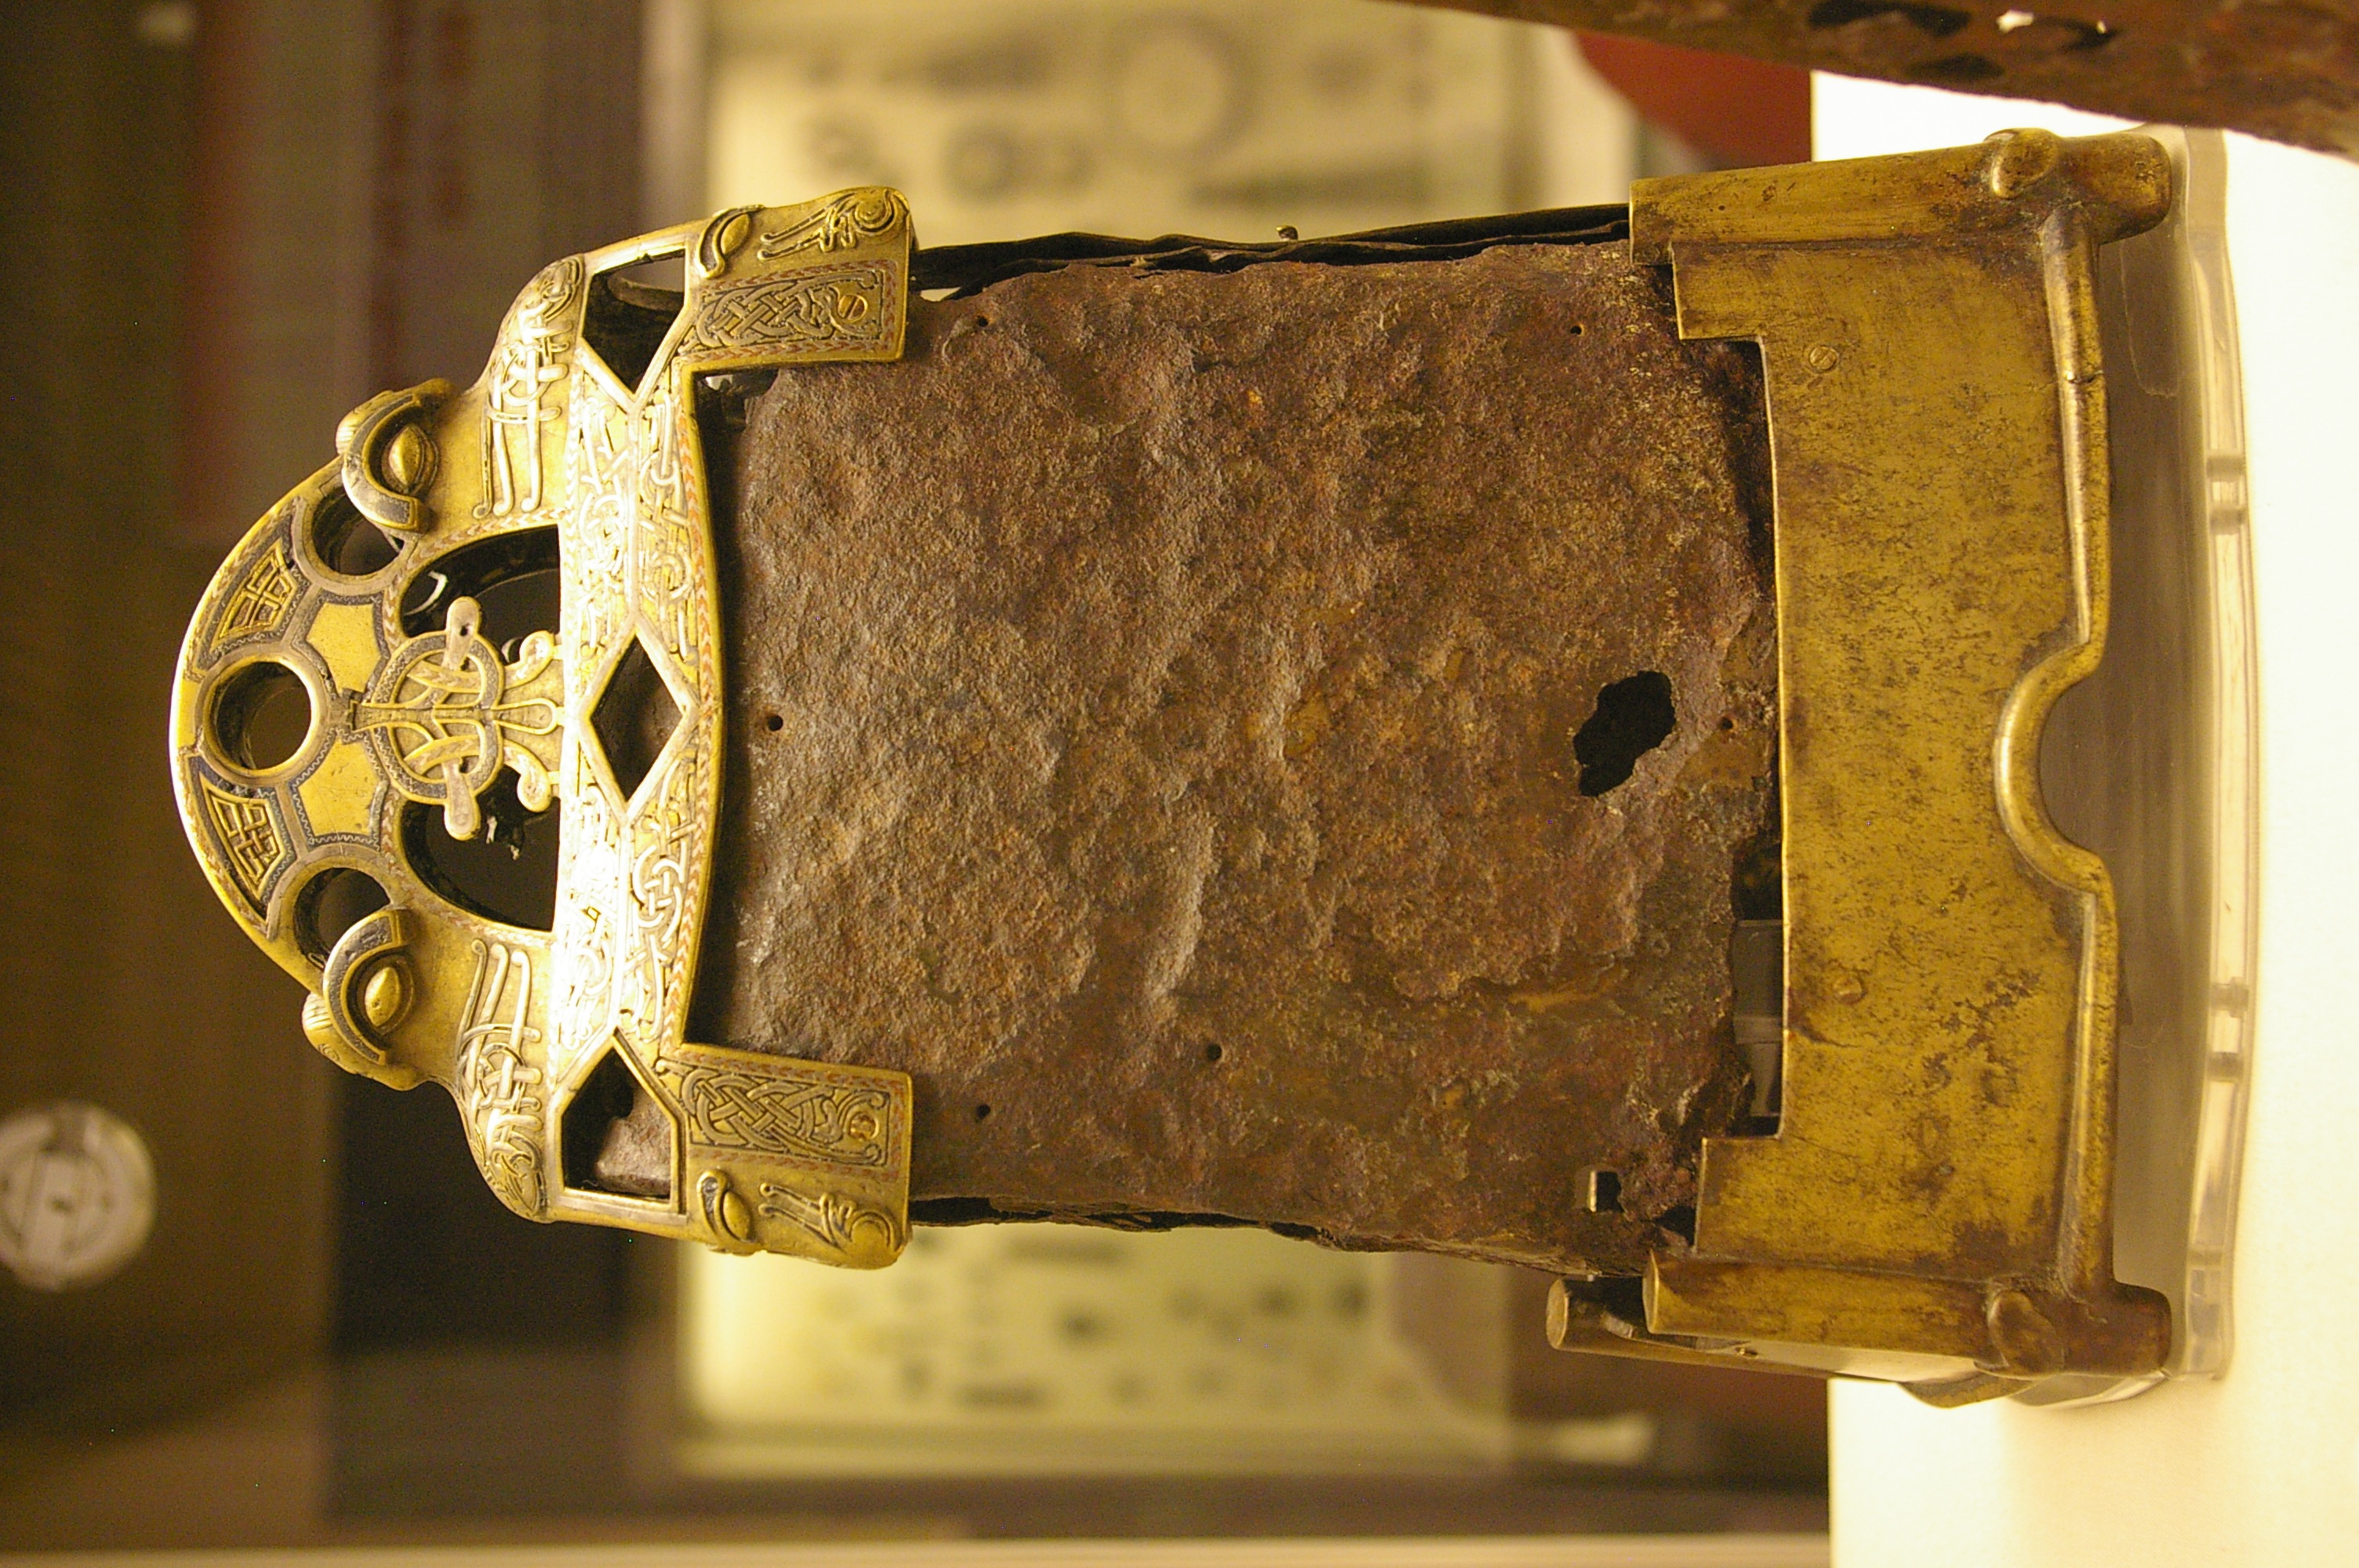 La campana de San Cuileáin by Artista anónimo  - siglo VIII-XI - 30 cm  x 24 cm British Museum